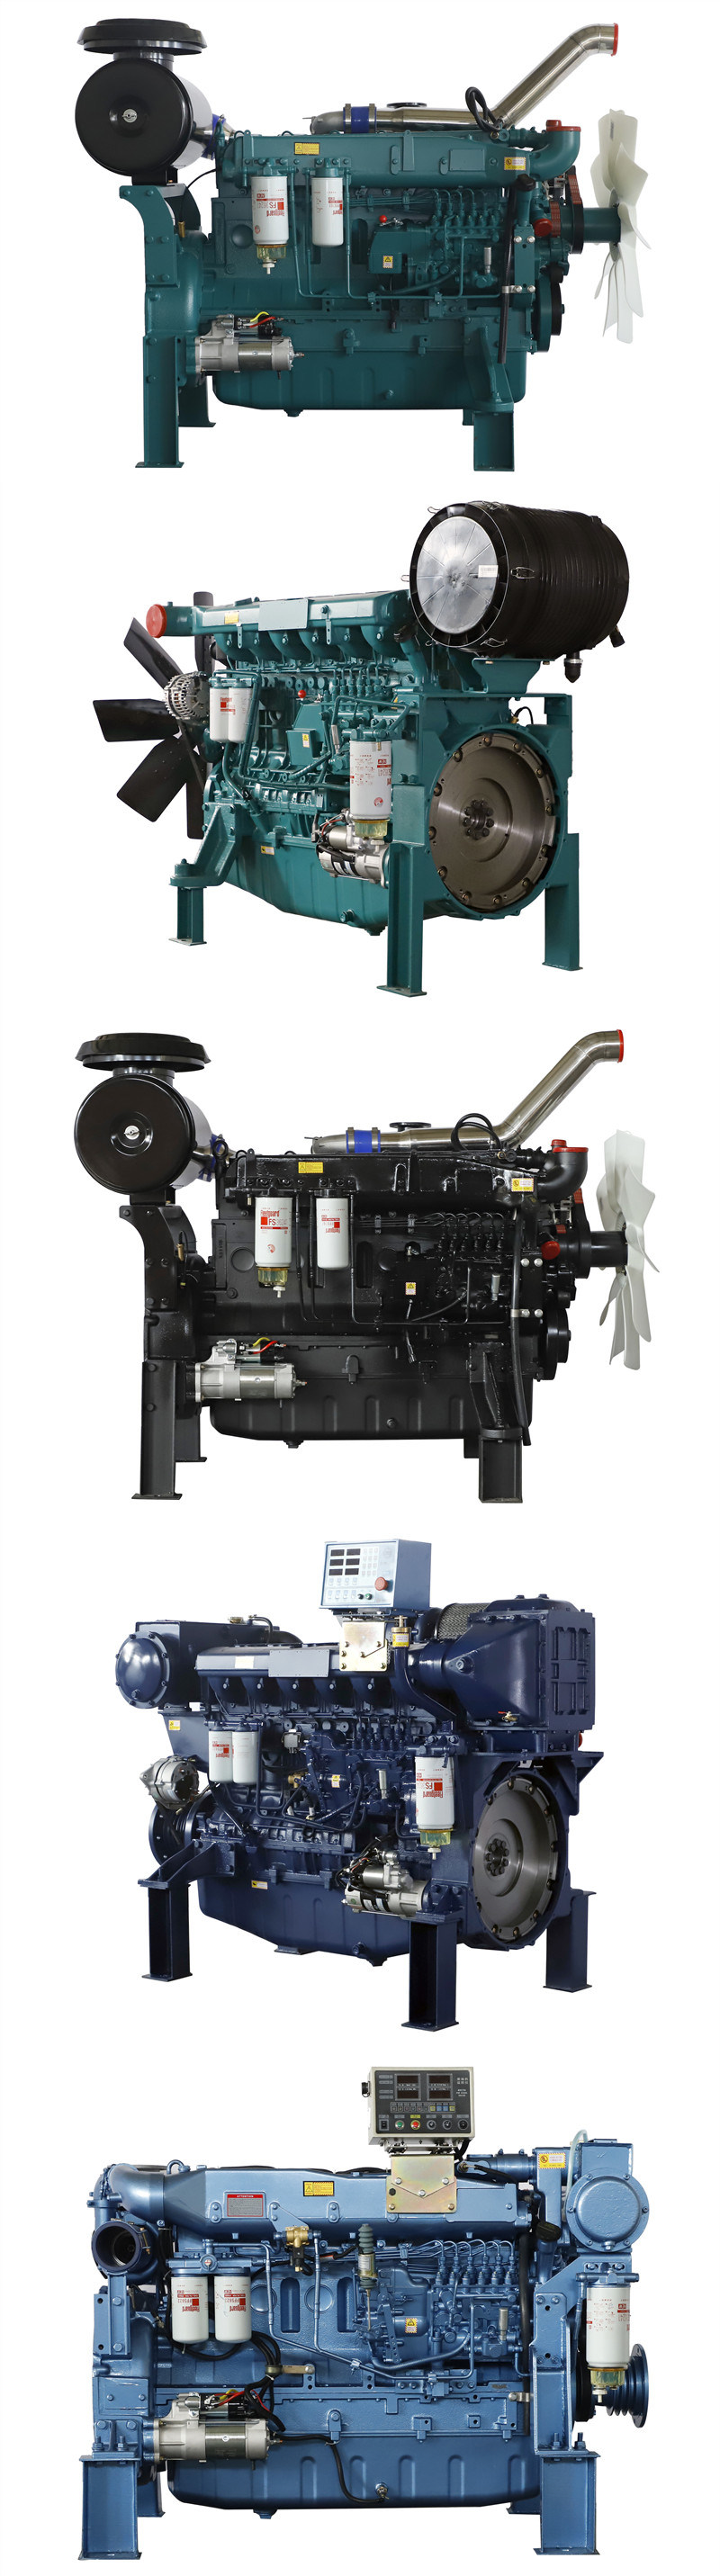 Diesel Engine 4 Cylinders Diesel Engine for Diesel Generator Set